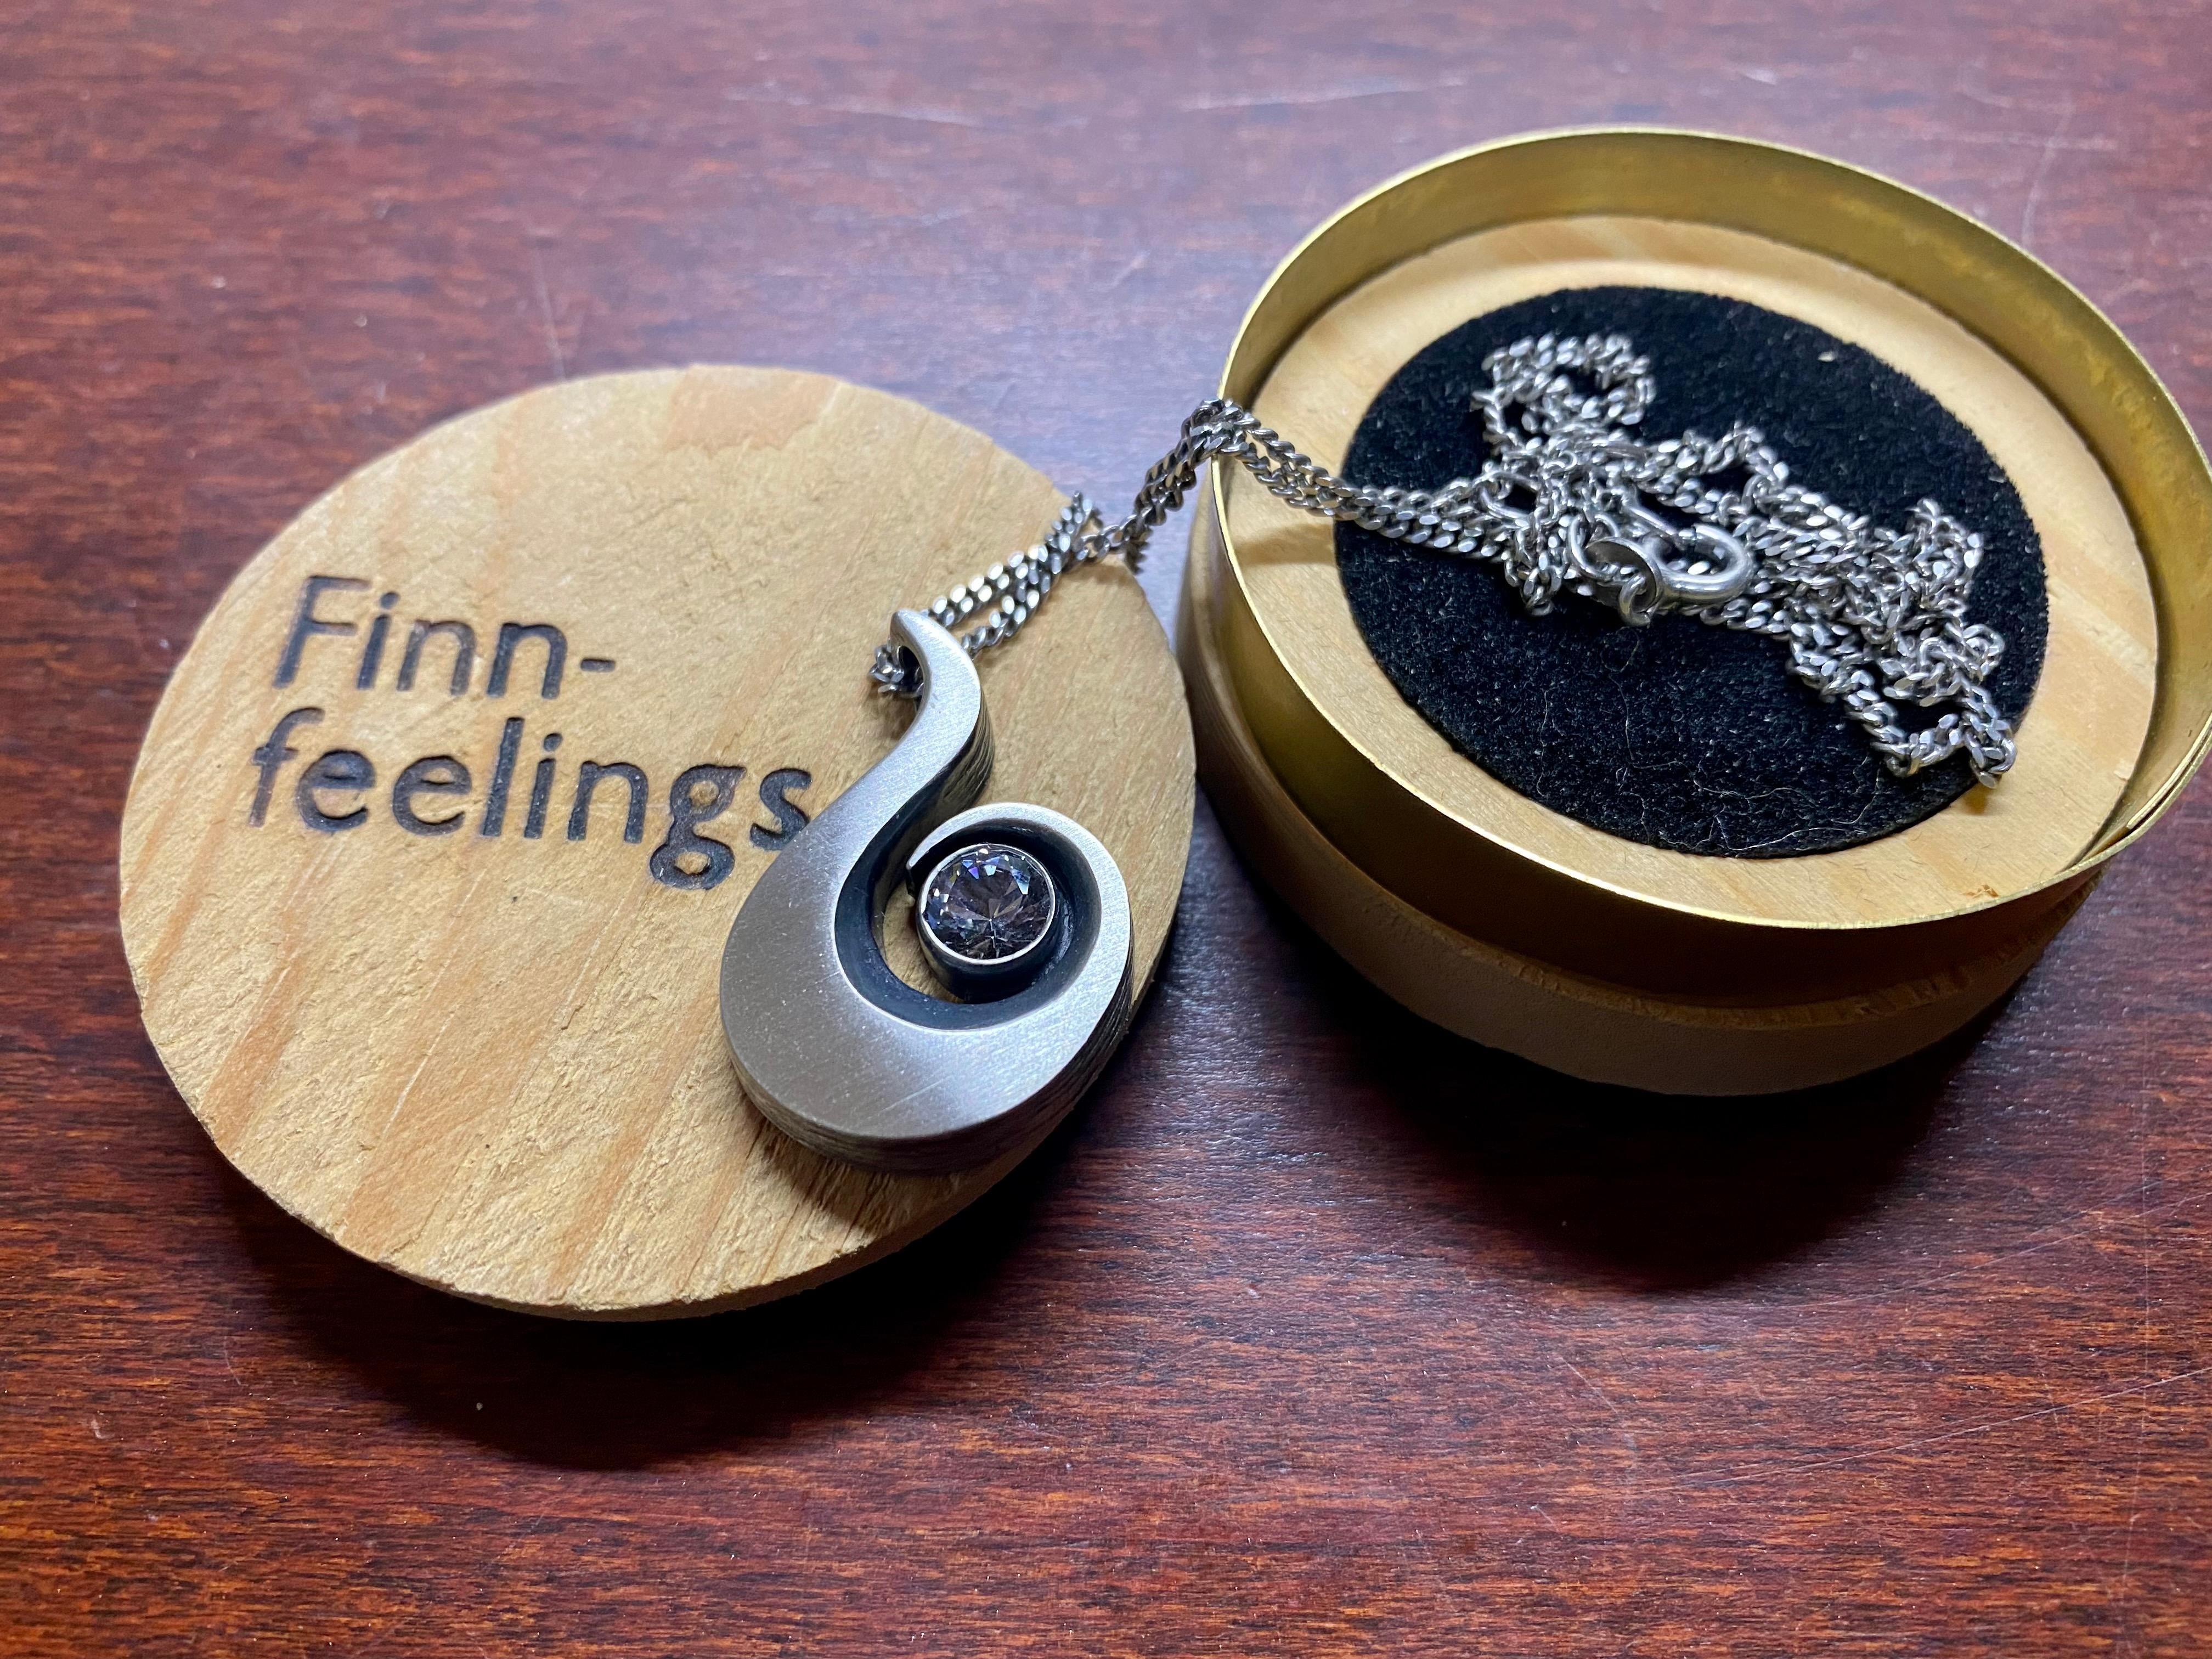 finn feelings jewellery